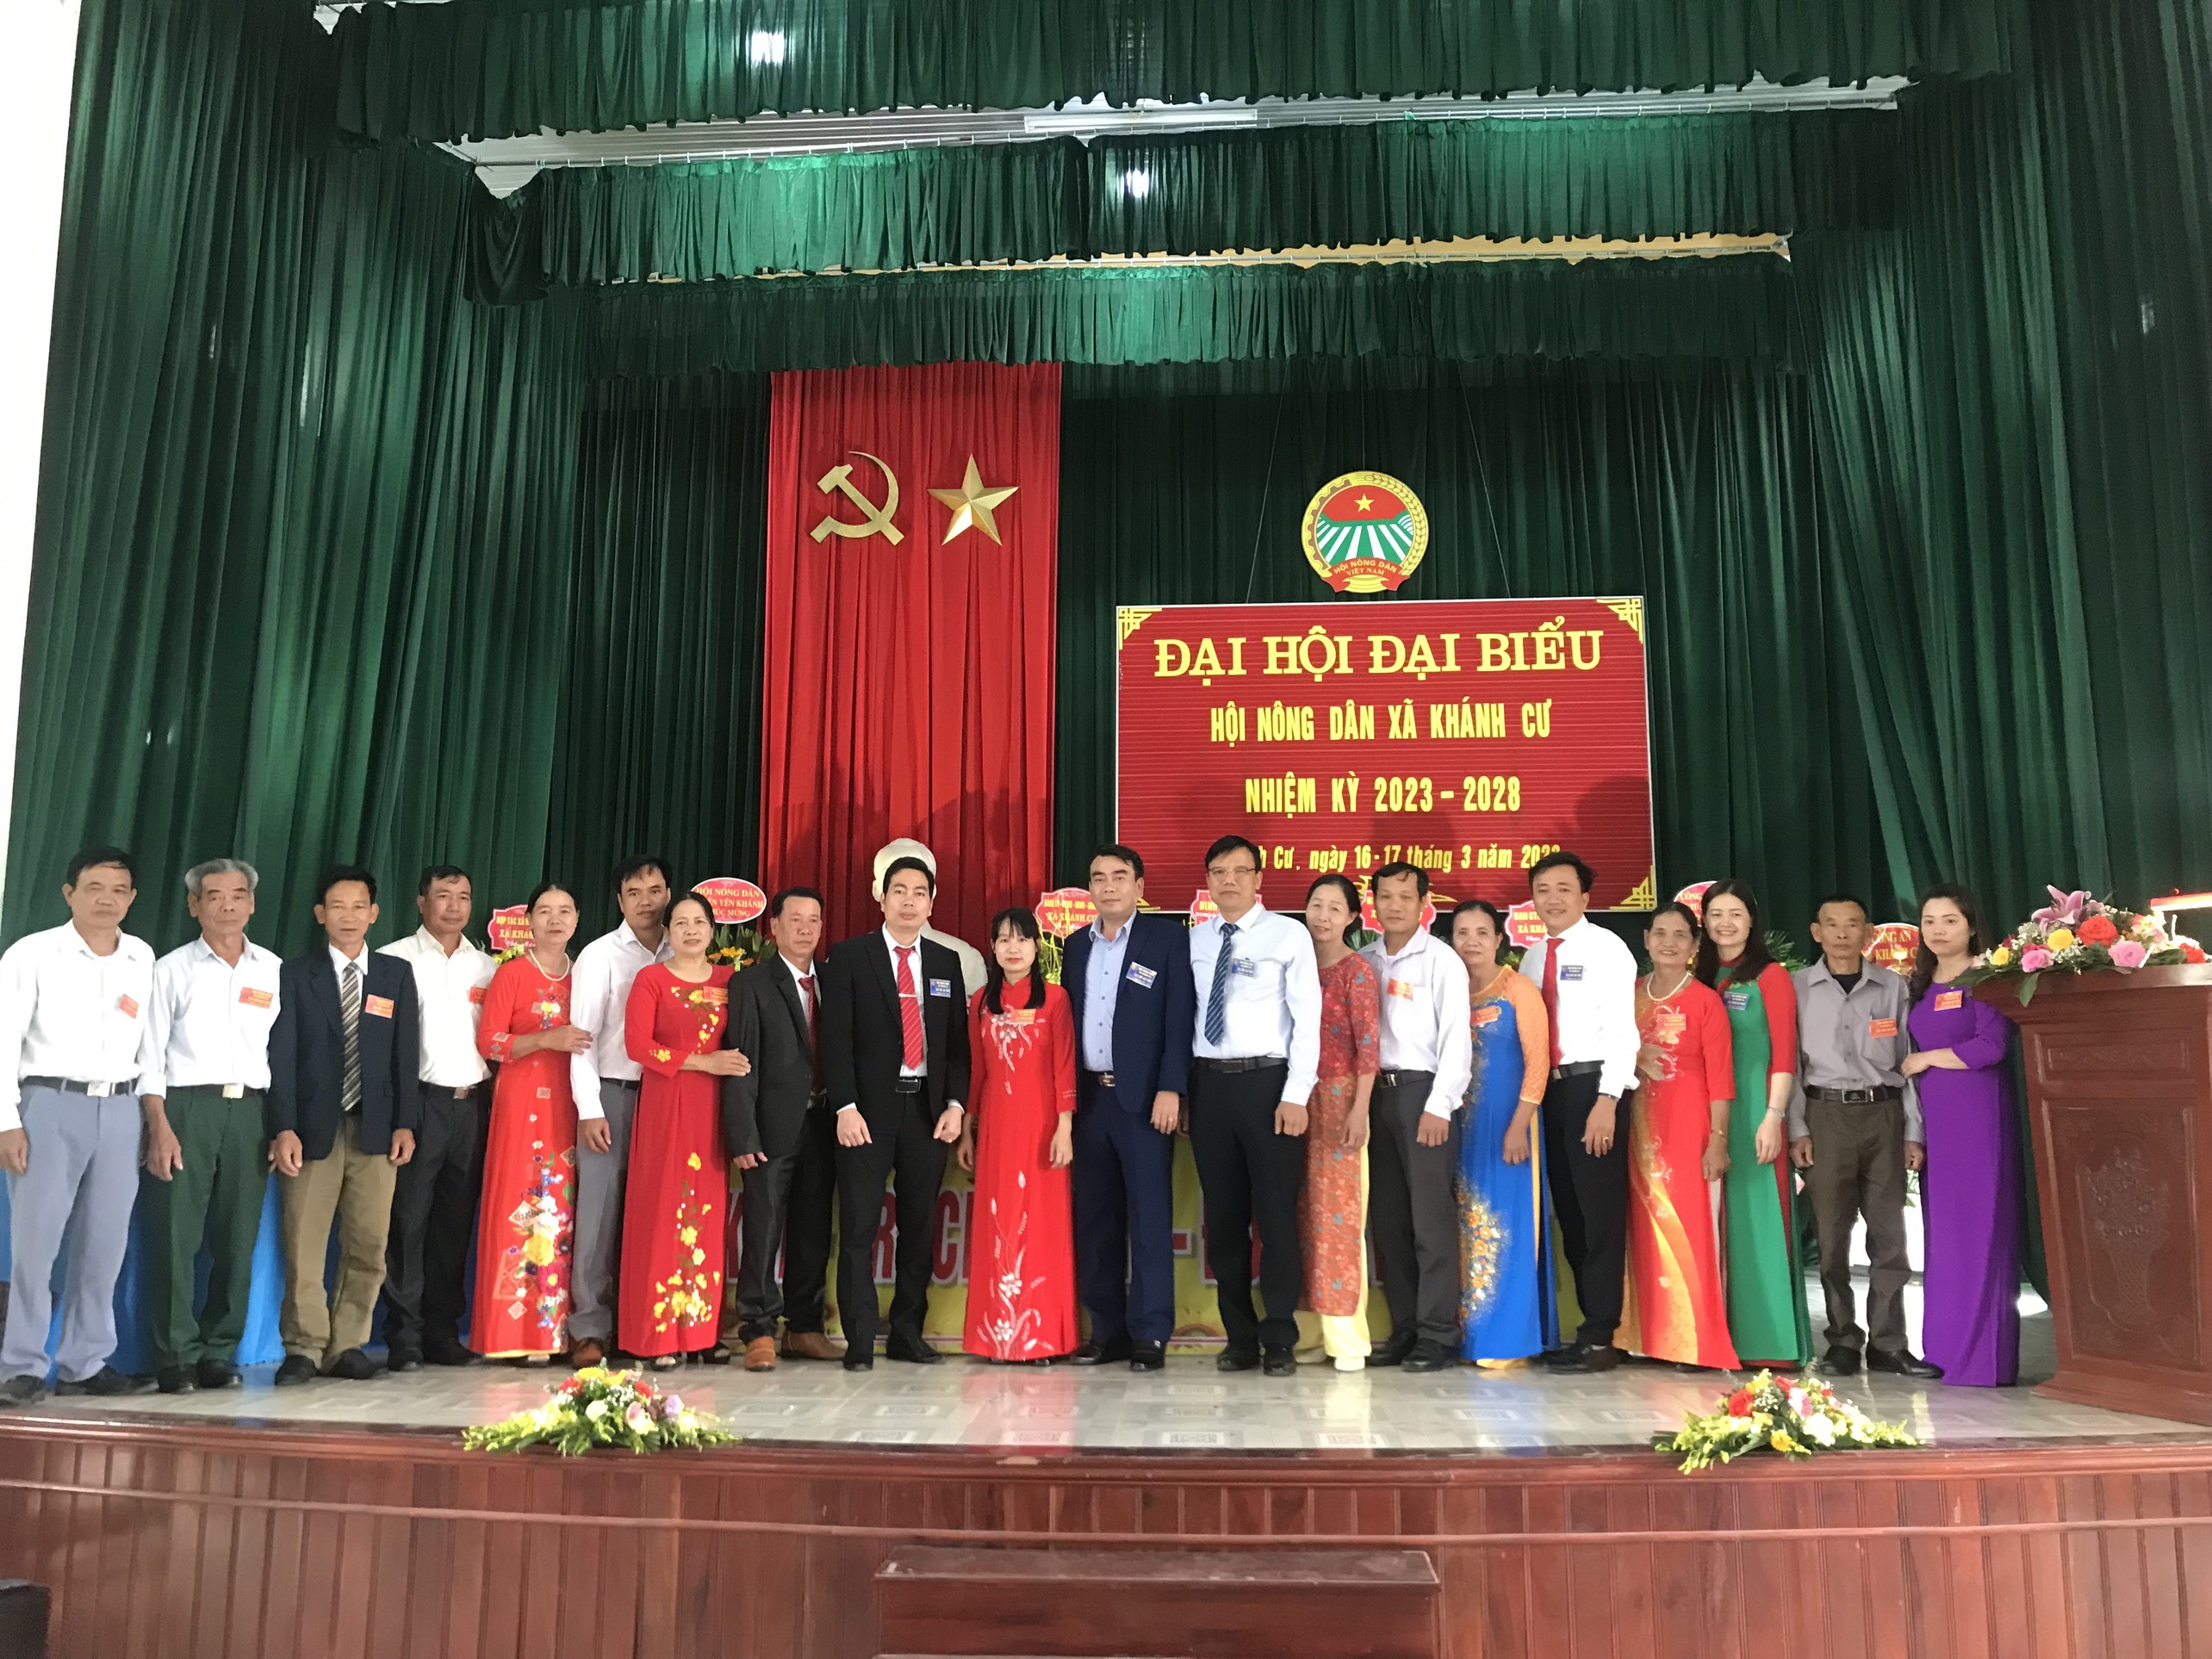 Hội Nông dân xã Khánh Cư tổ chức thành công Đại hội đại biểu, nhiệm kỳ 2023-2028